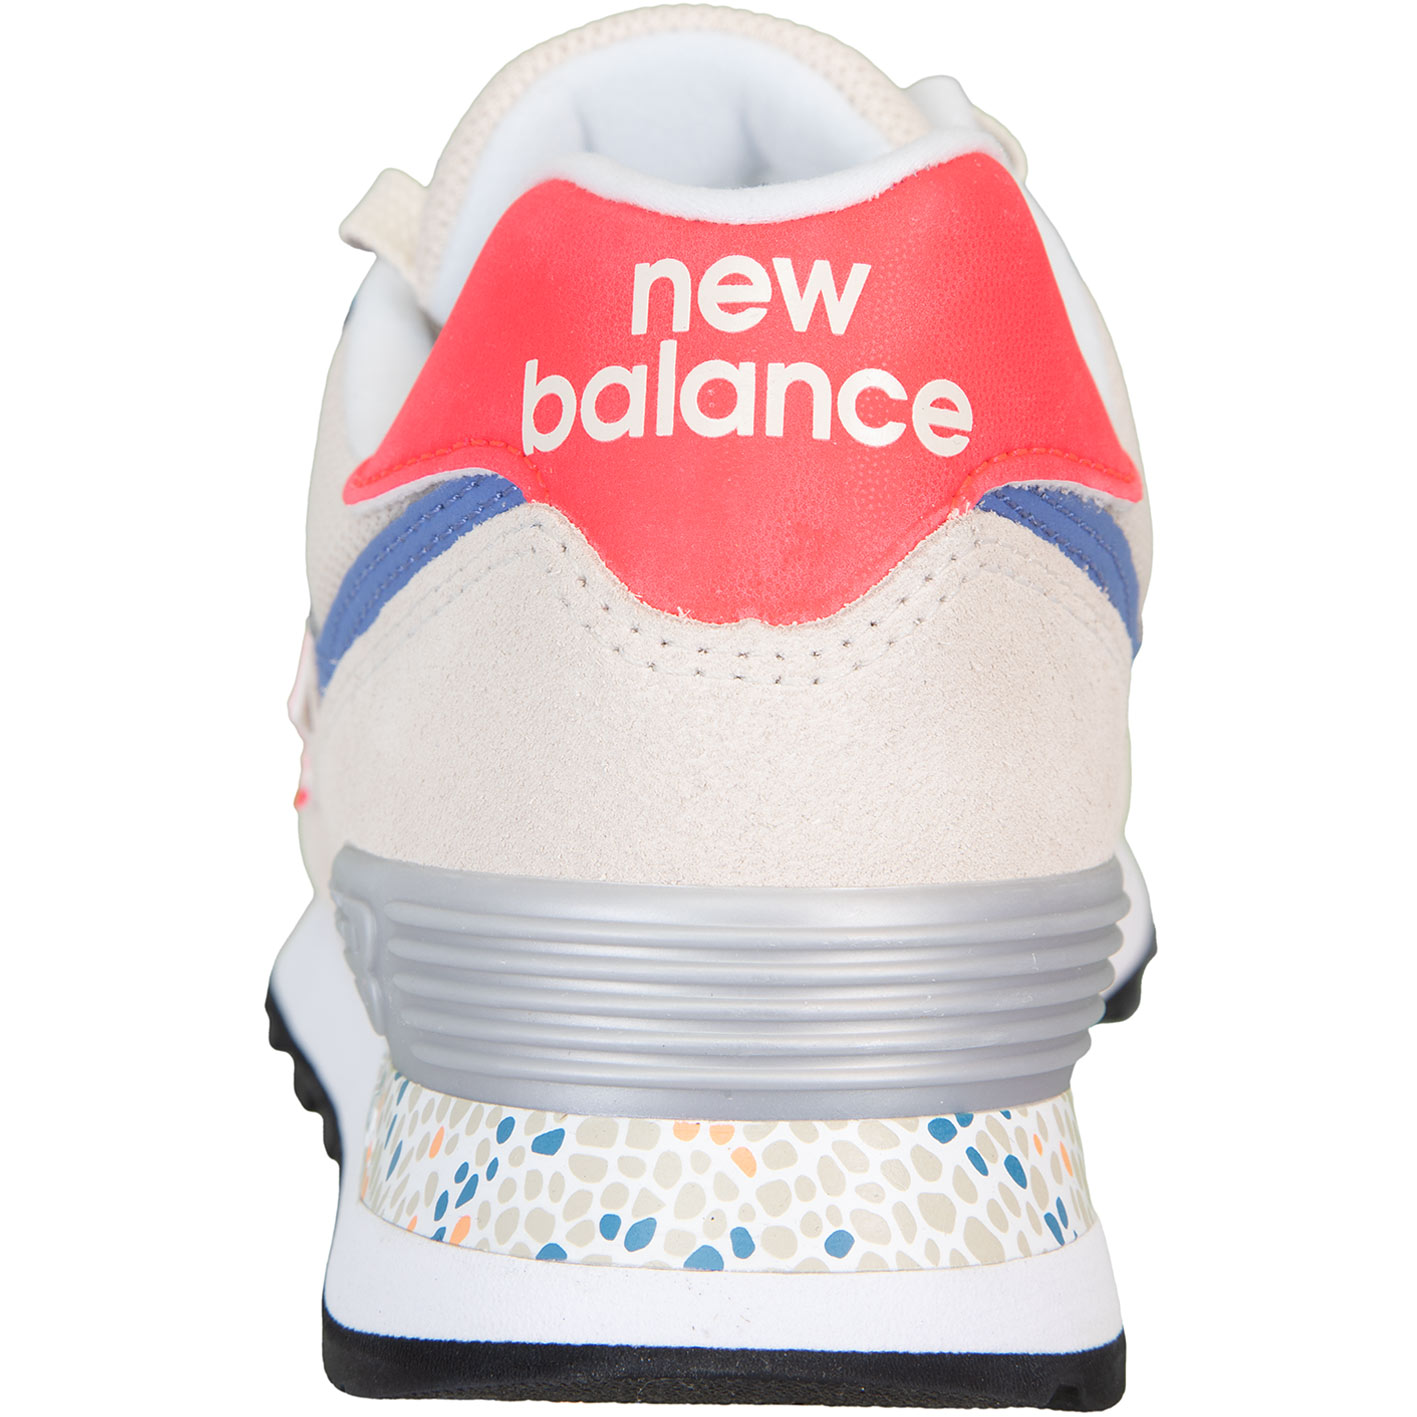 ☆ New Balance NB 574 Damen Sneaker Schuhe beige - hier bestellen!